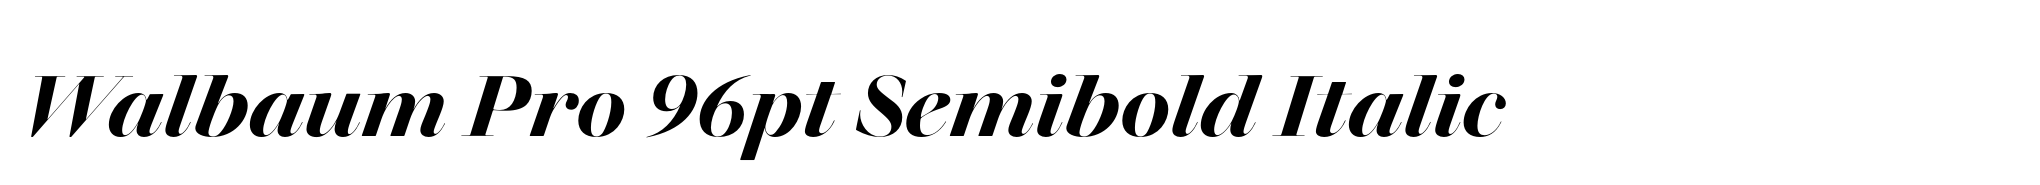 Walbaum Pro 96pt Semibold Italic image